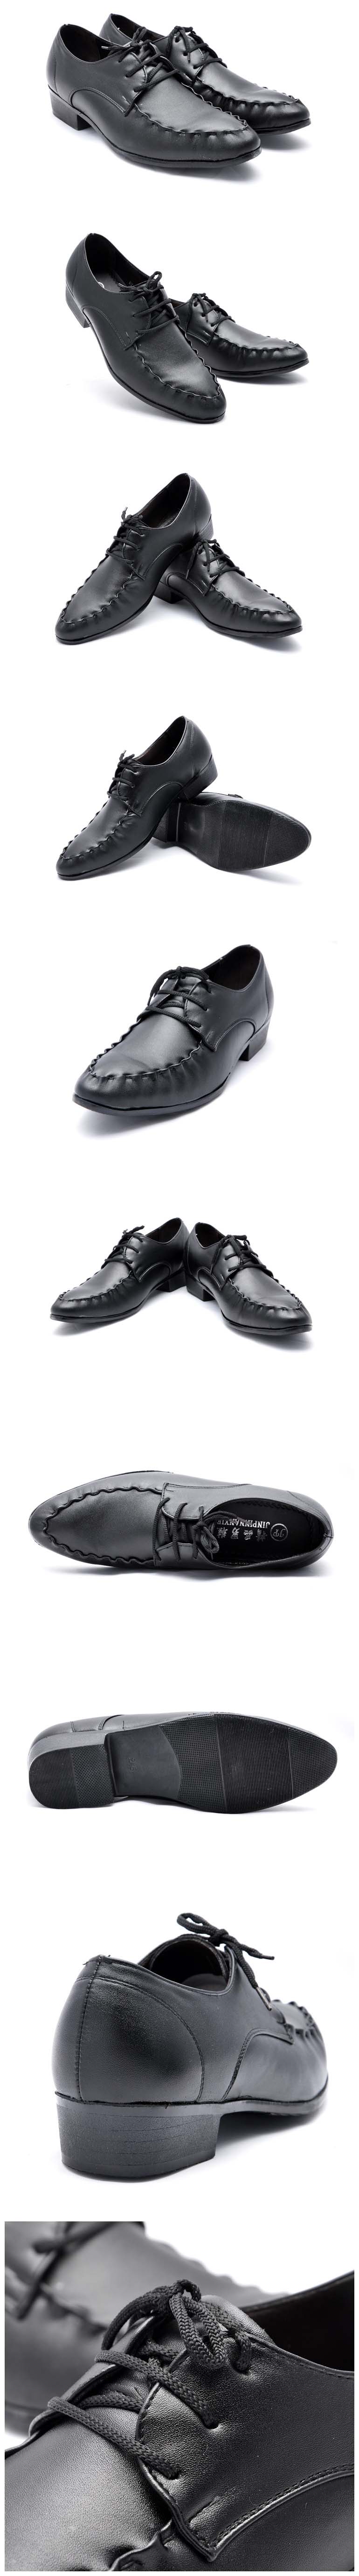 jual sepatu kerja pria dari kulit sintetis premium model terbaru dengan tampilan doff membuat anda tampil lebih elegan sepatu kerja ini sangat cocok dipakai ke kantor